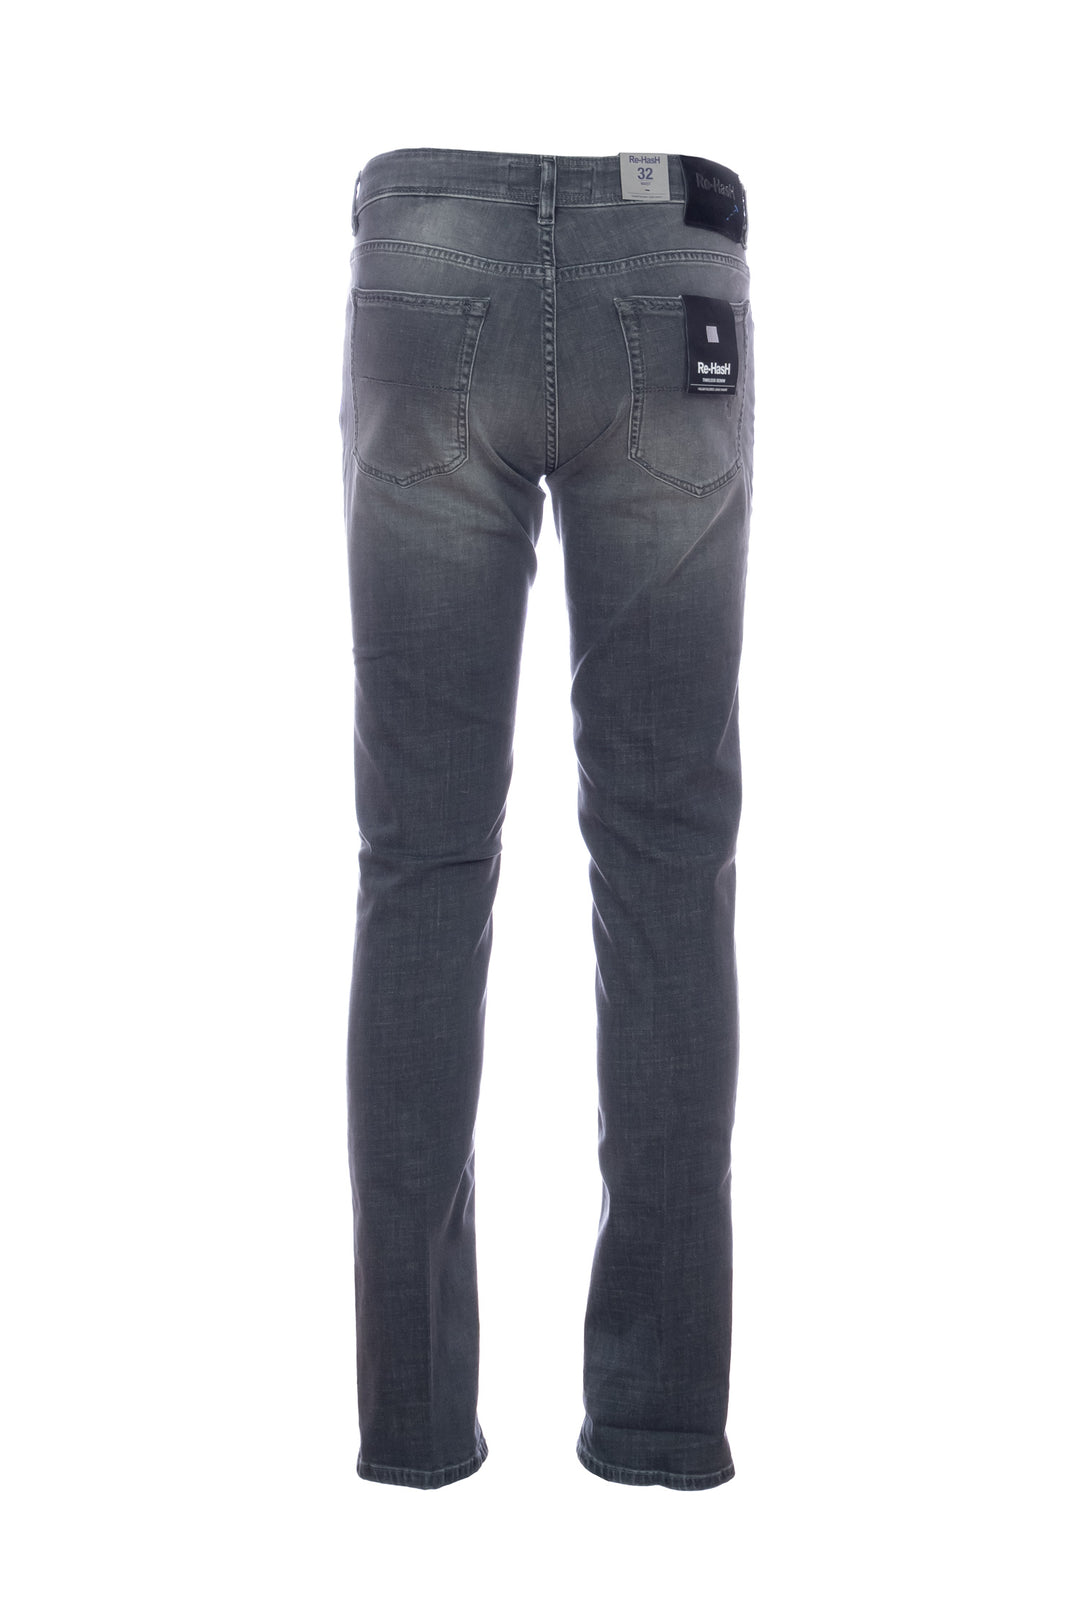 RE-HASH Jeans 5 tasche “RUBENS-Z” in denim nero - Mancinelli 1954